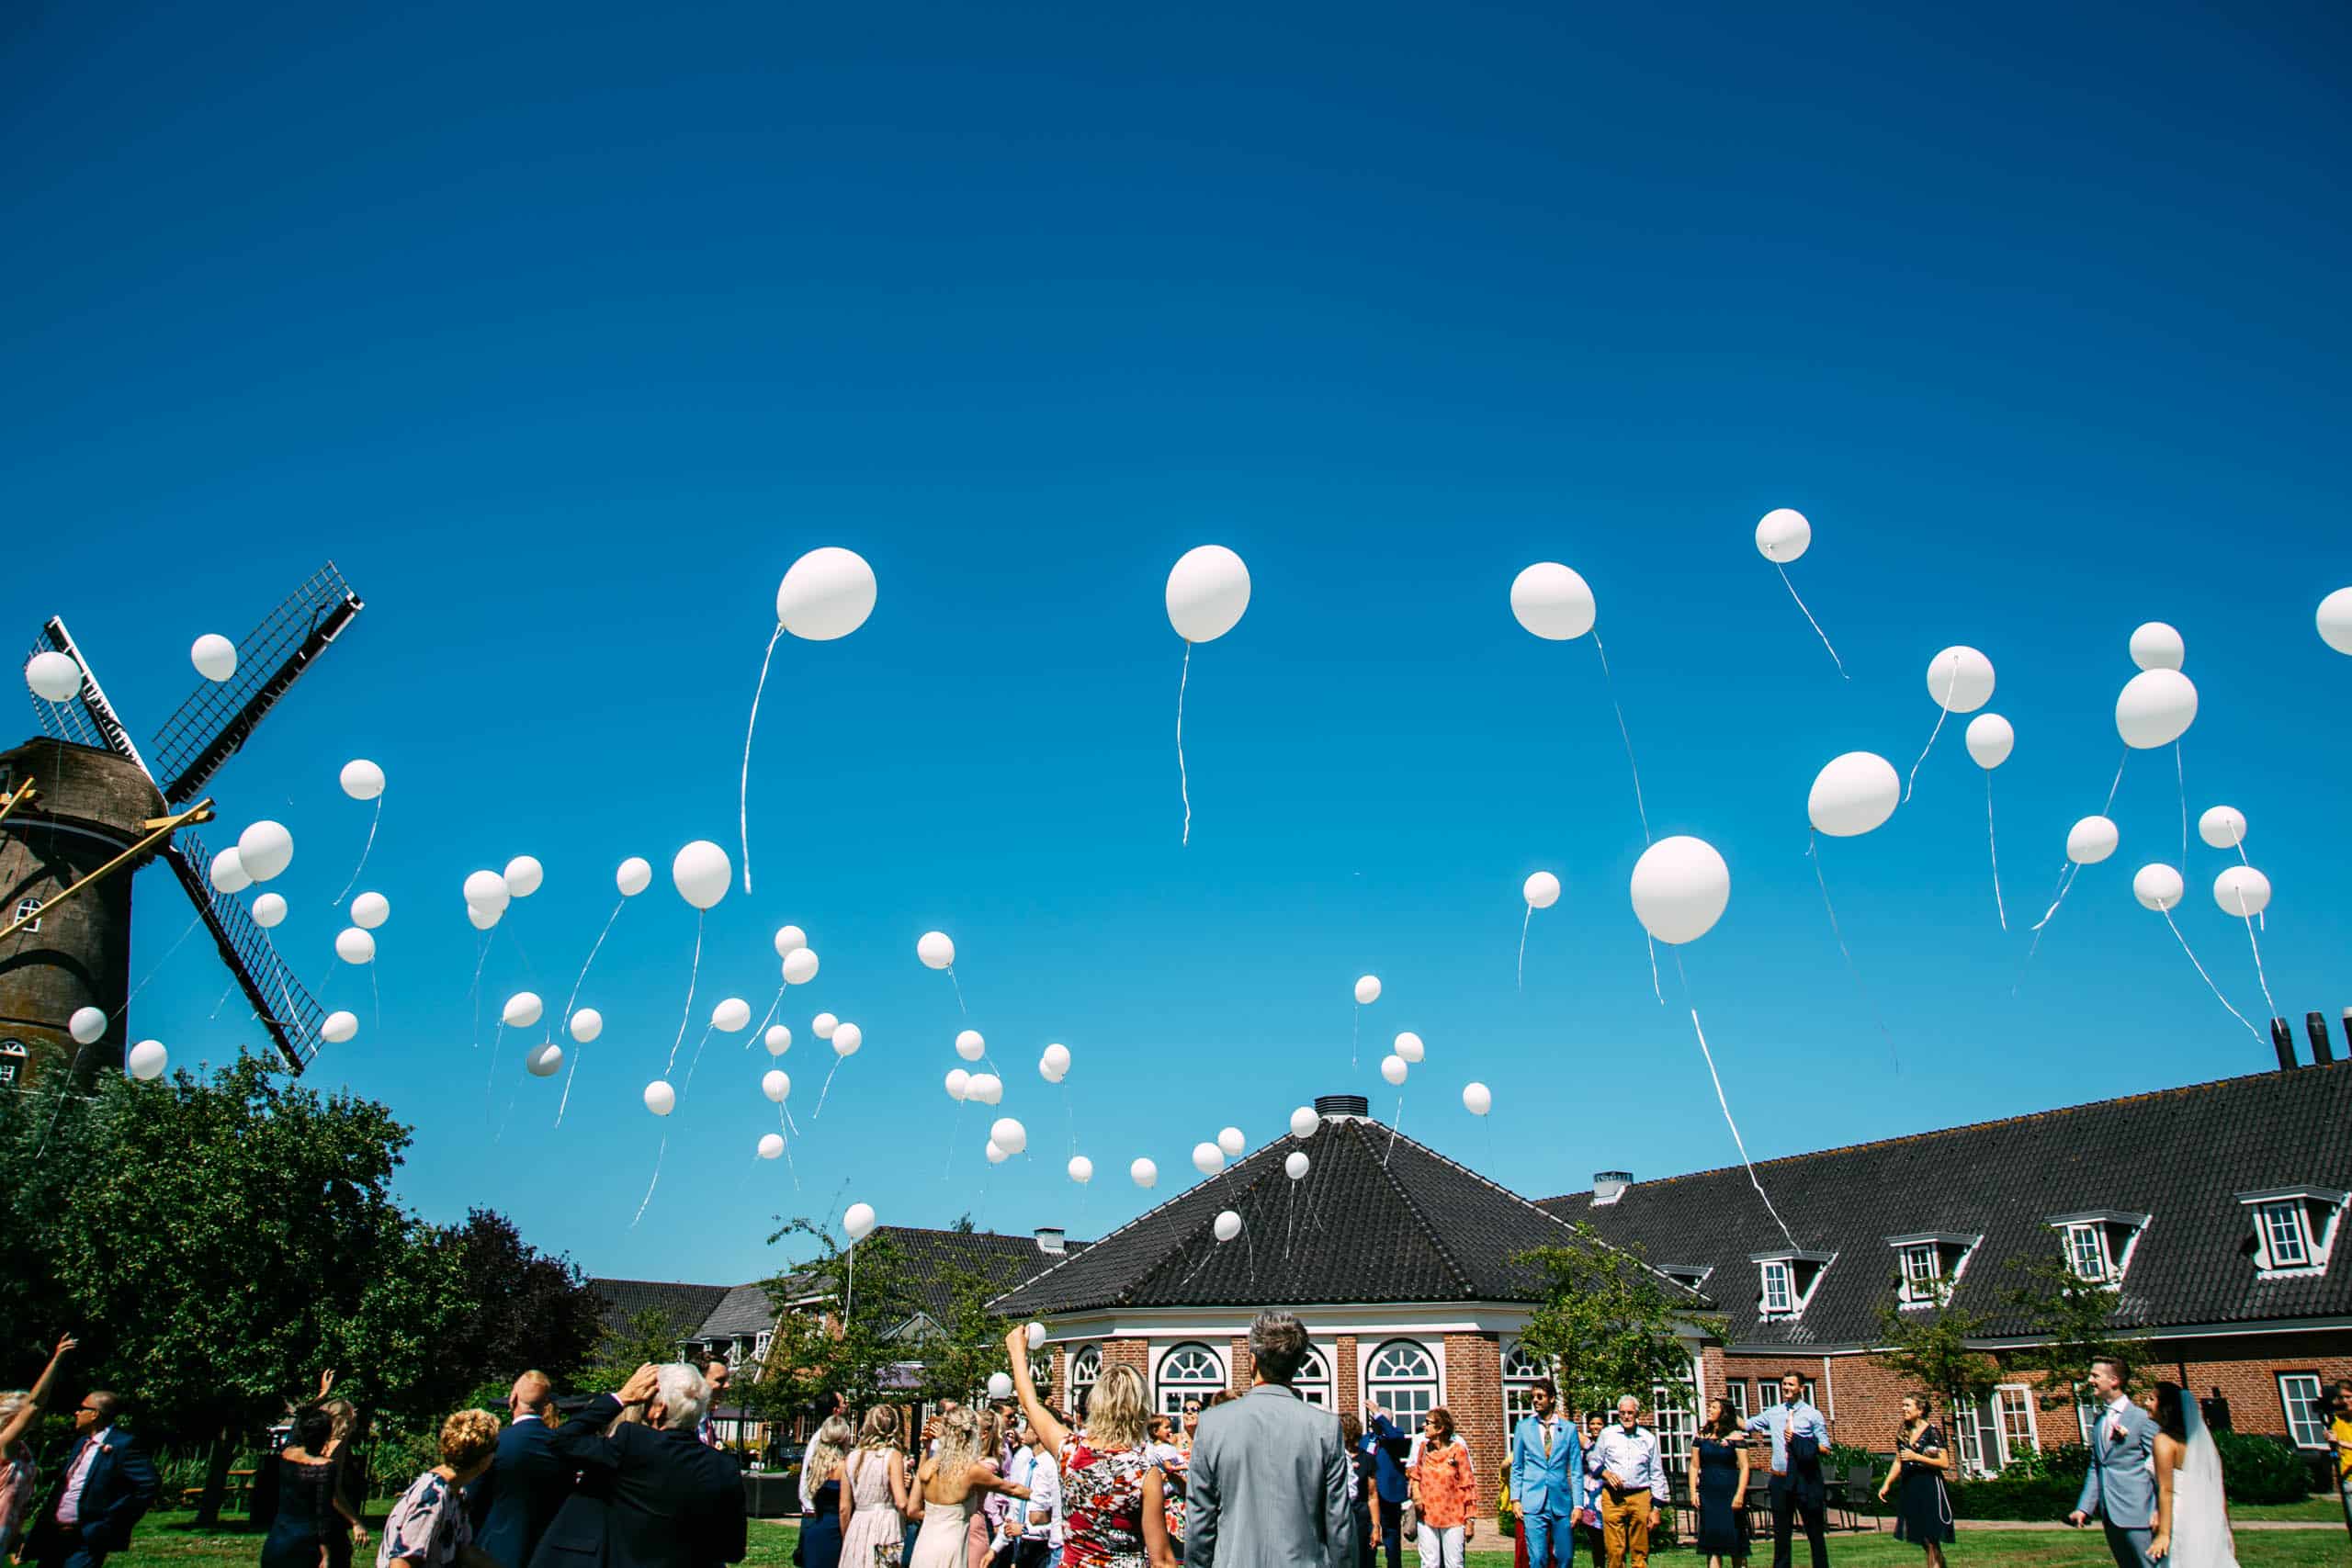 Witte ballonnen zweven in de lucht voor een Nederlandse windmolen op een vreugdevolle bruiloft.